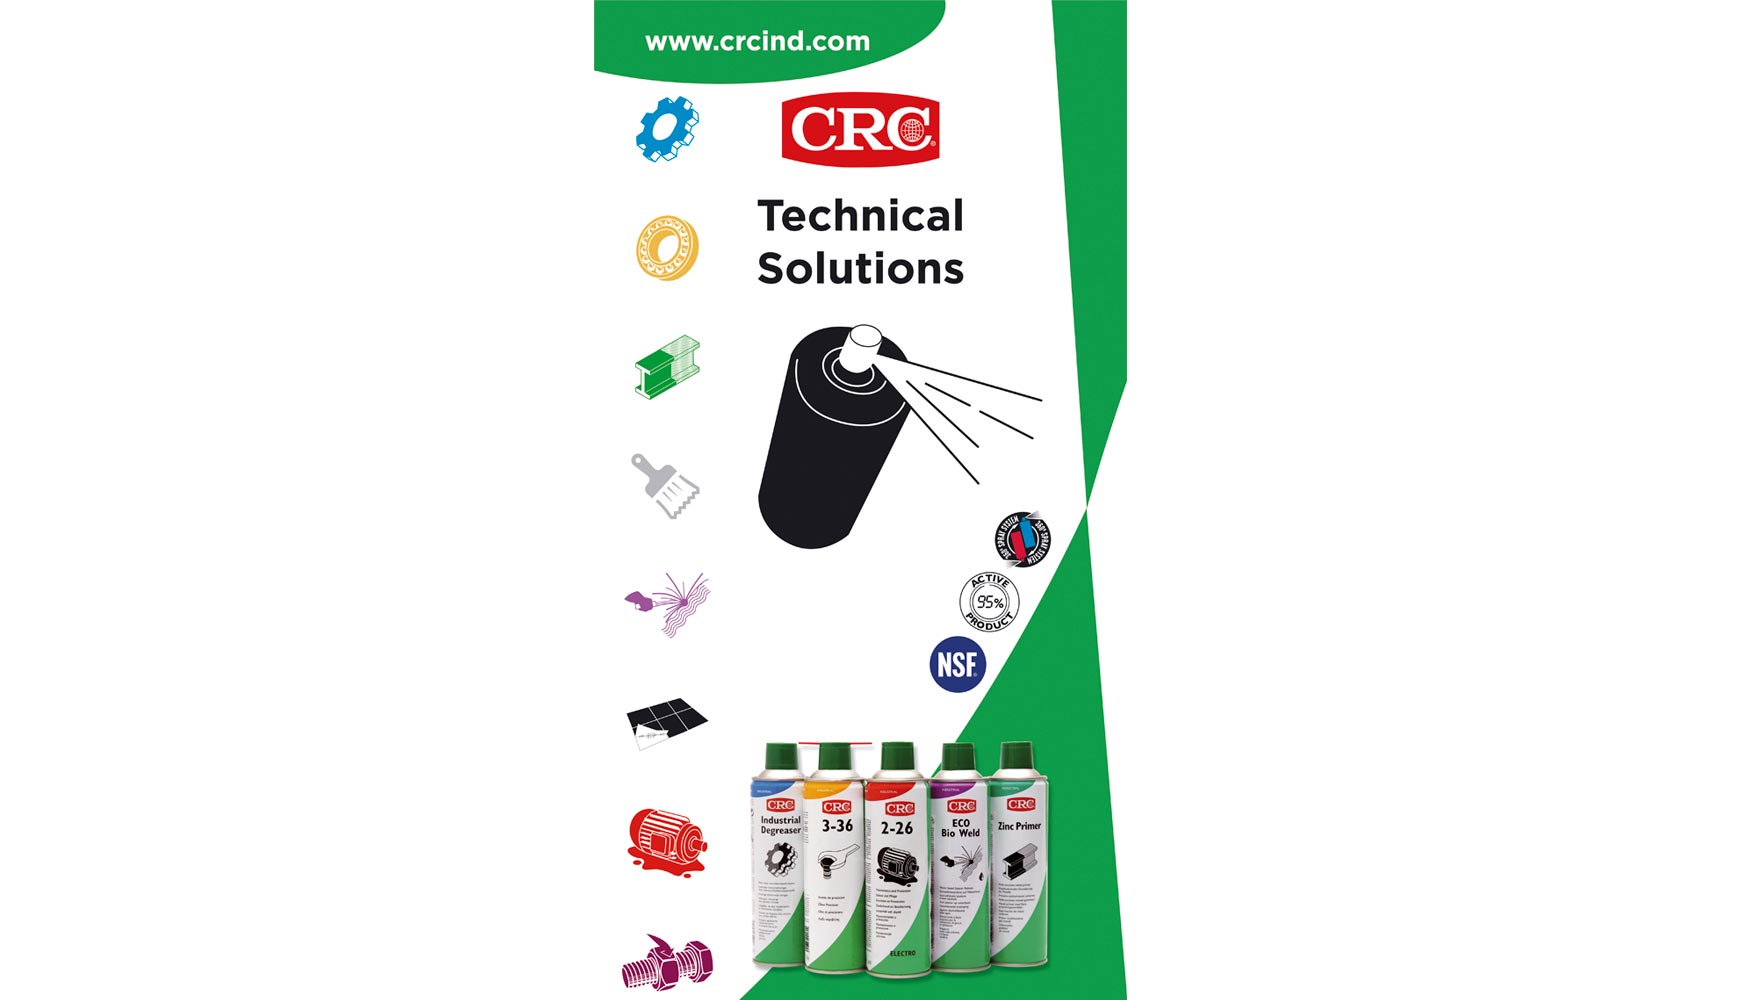 La nueva imagen de CRC apuesta por la claridad y la facilidad para identificar las diversas lneas de producto